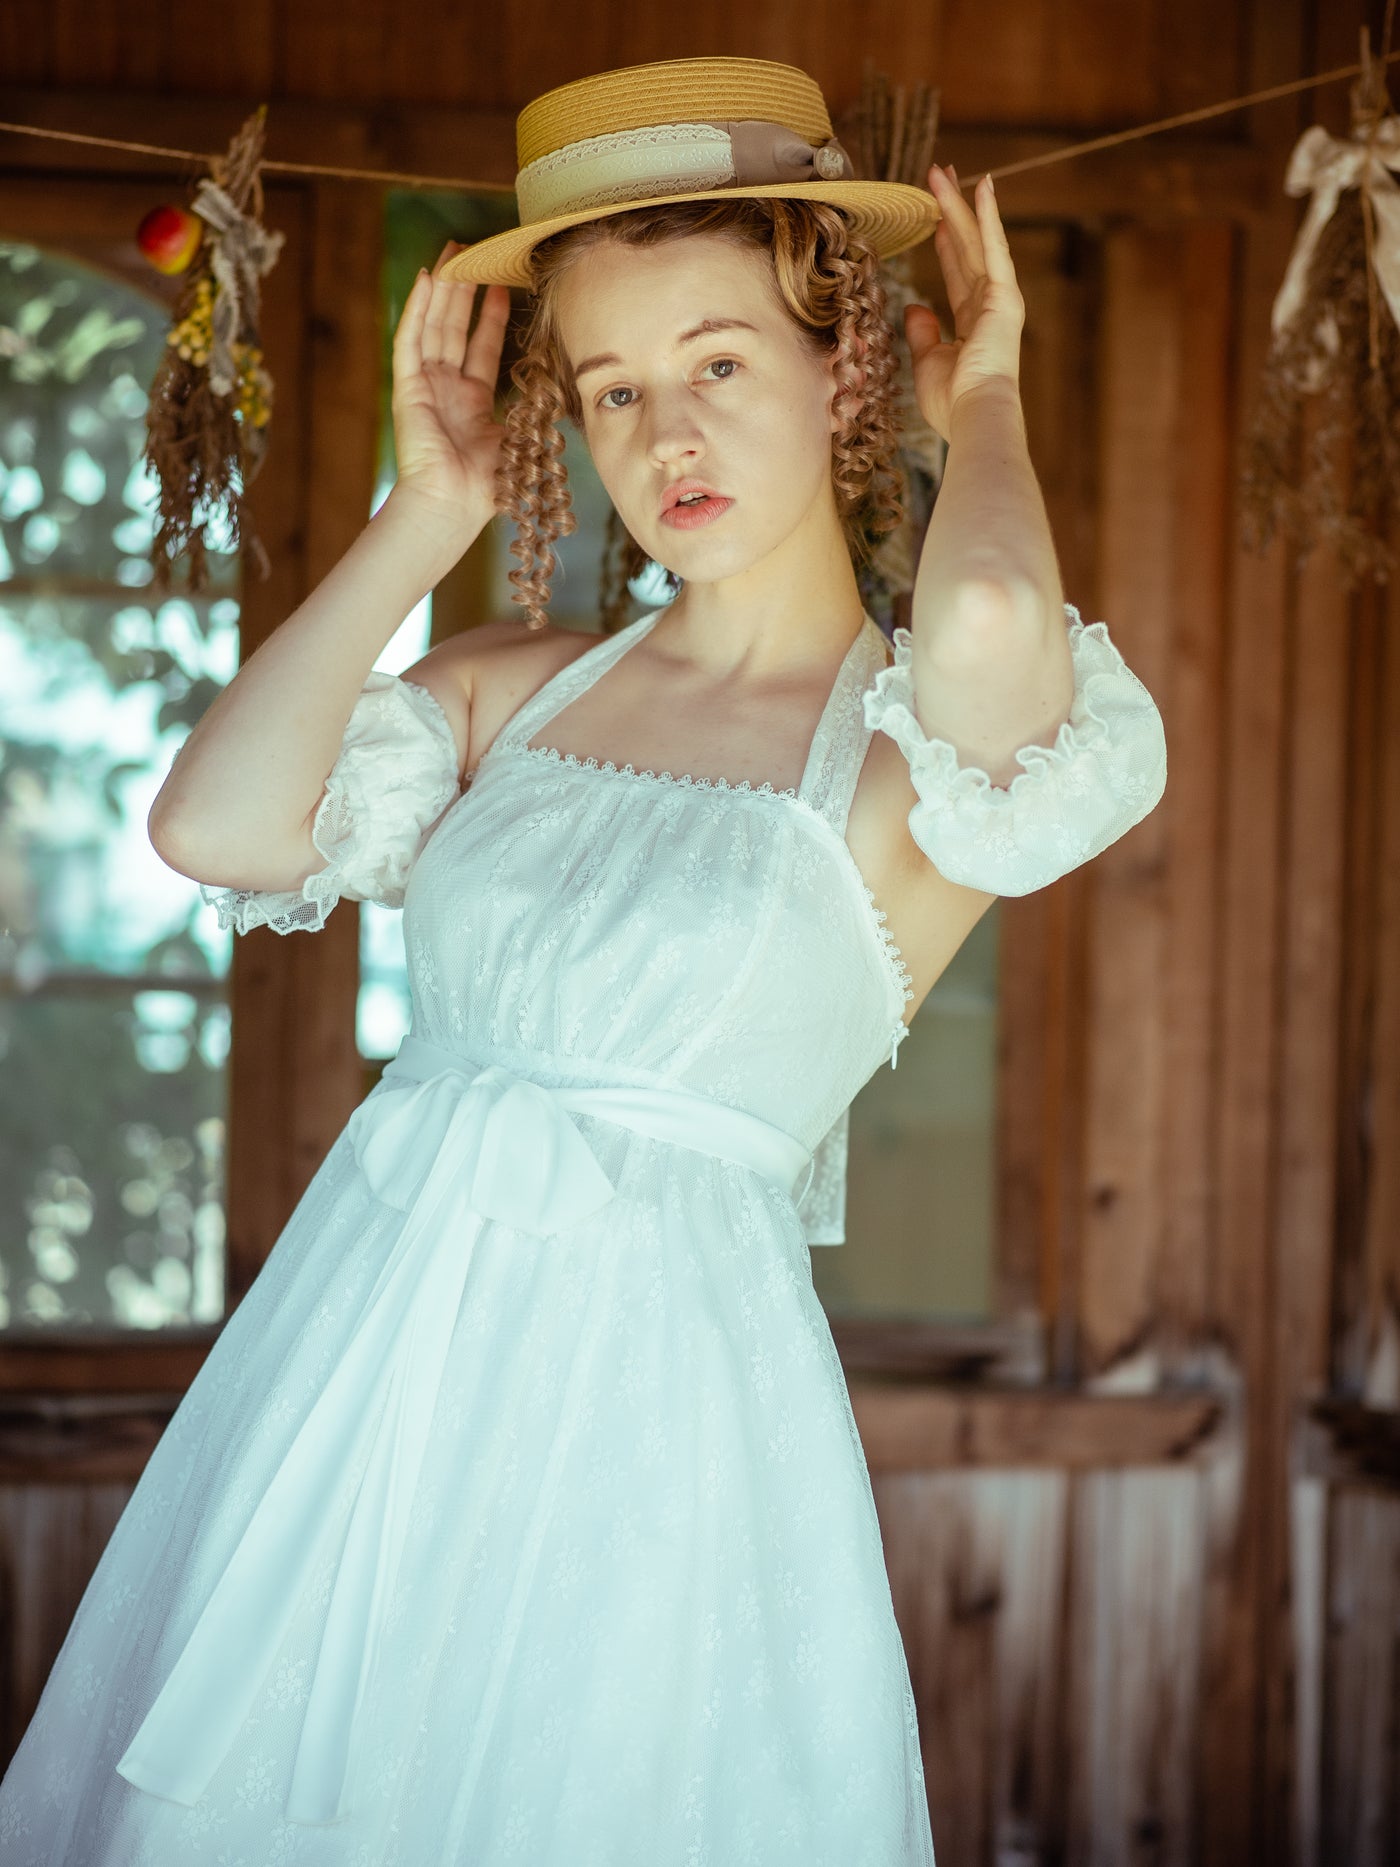 エレガントレーシーホルターネックドレス - Victorian maiden